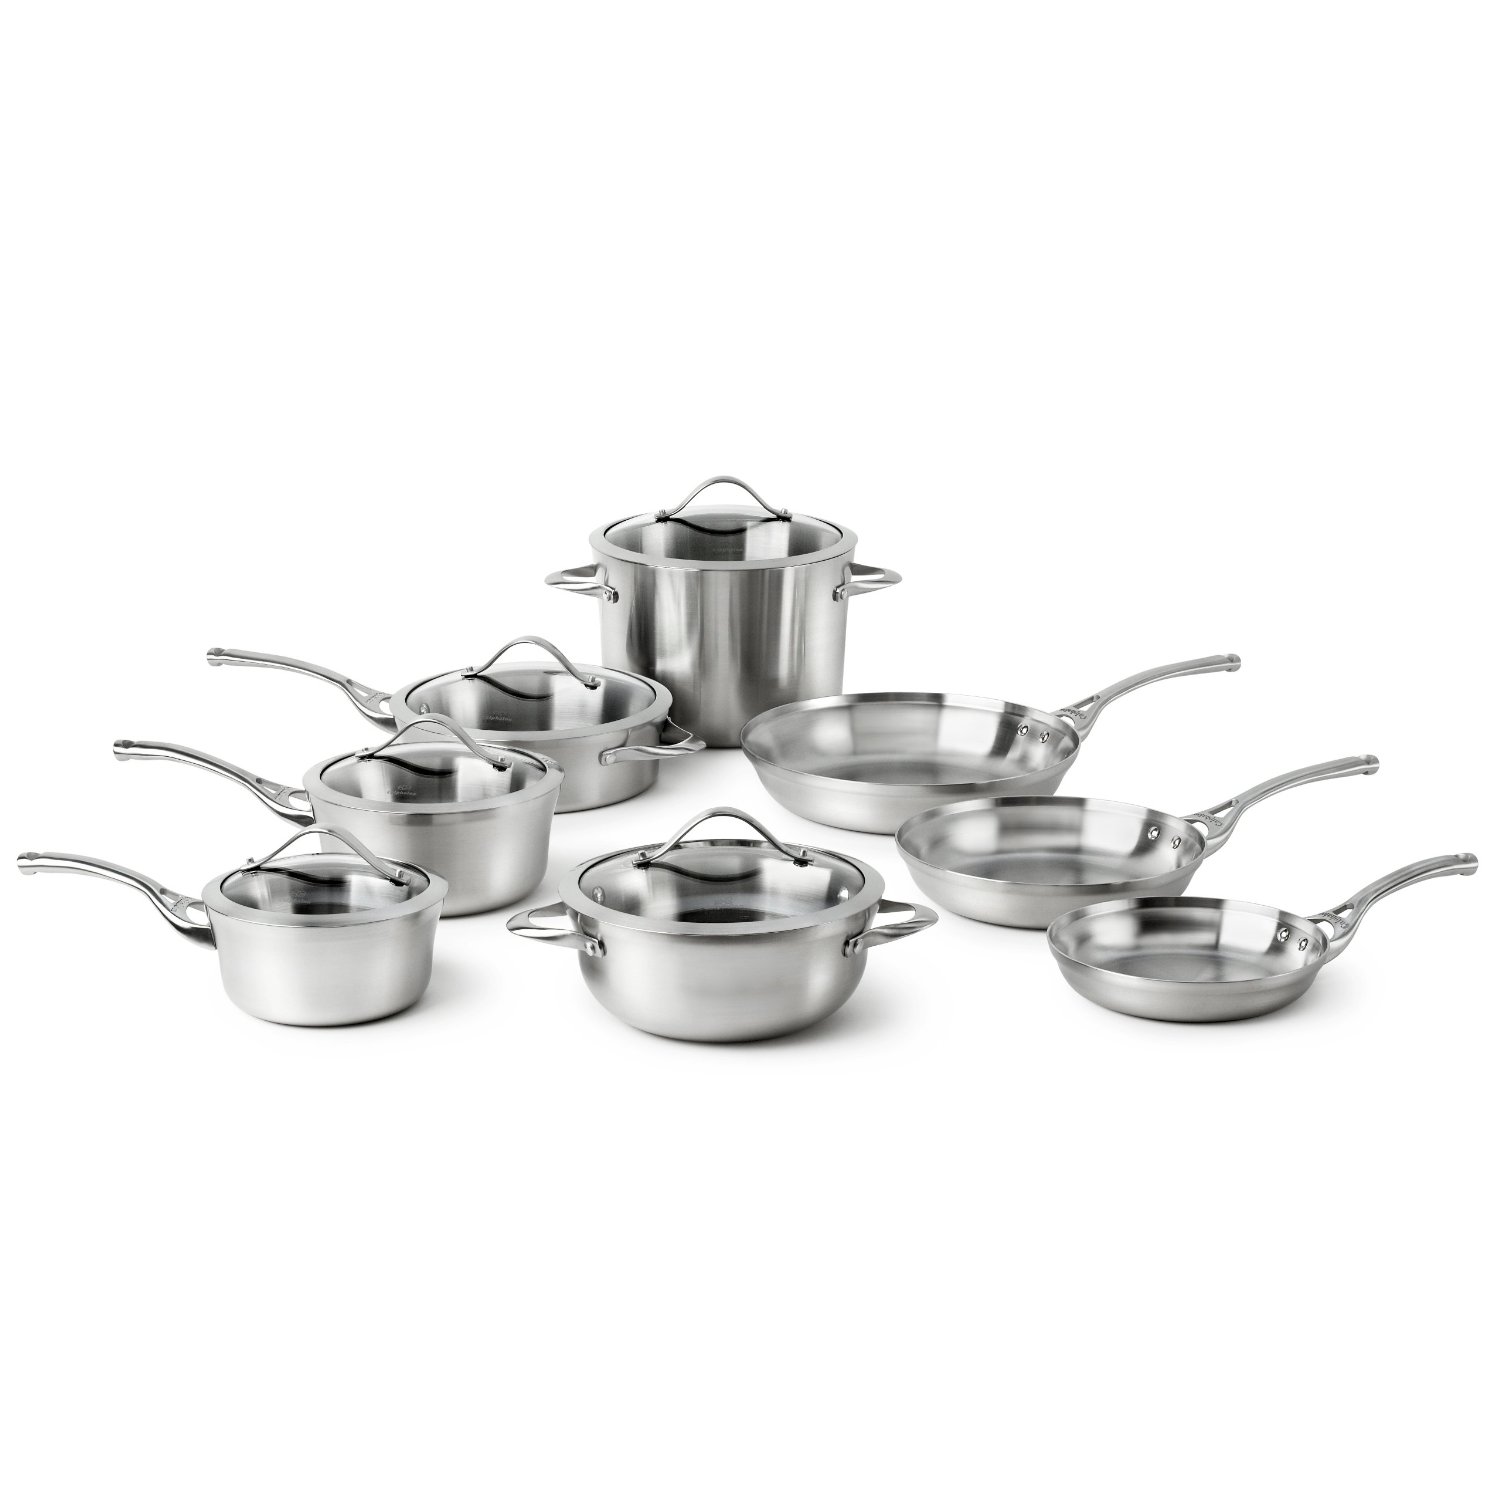 高級鍋具品牌 Calphalon Contemporary系列不鏽鋼廚具13件套$299.99，8件套$200